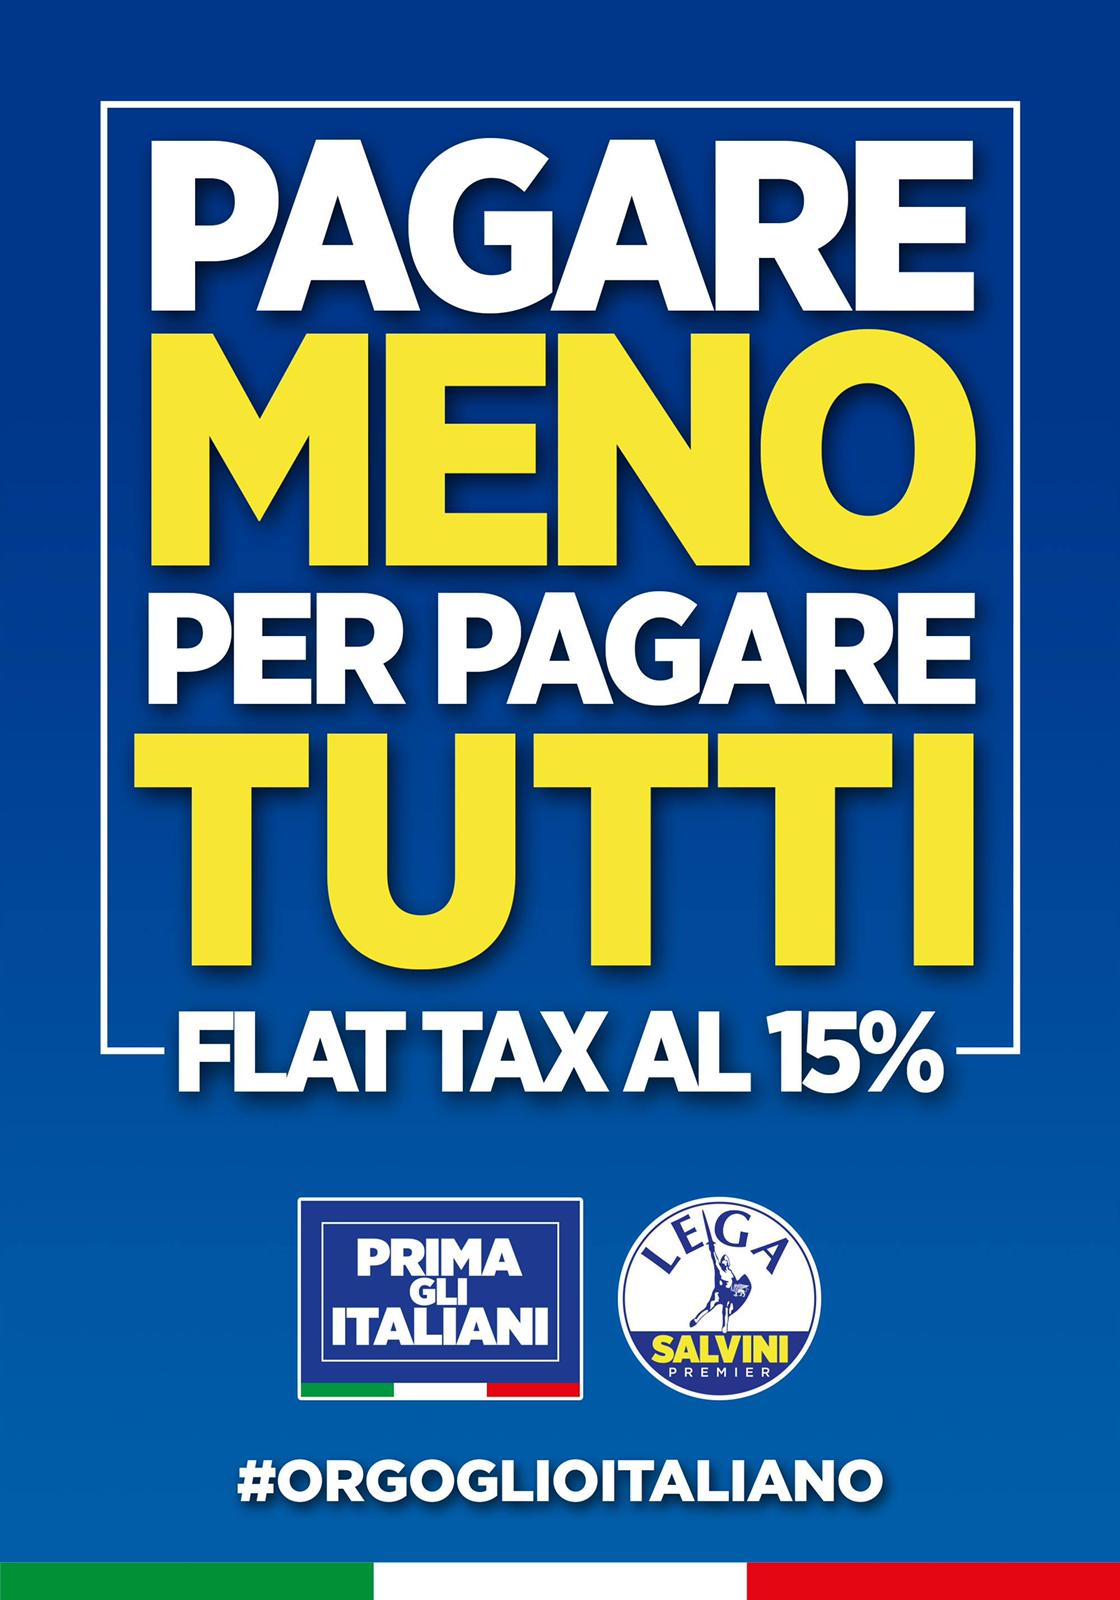 Pagare meno per pagare tutti! Flat tax al 15%! #ORGOGLIOITALIANO